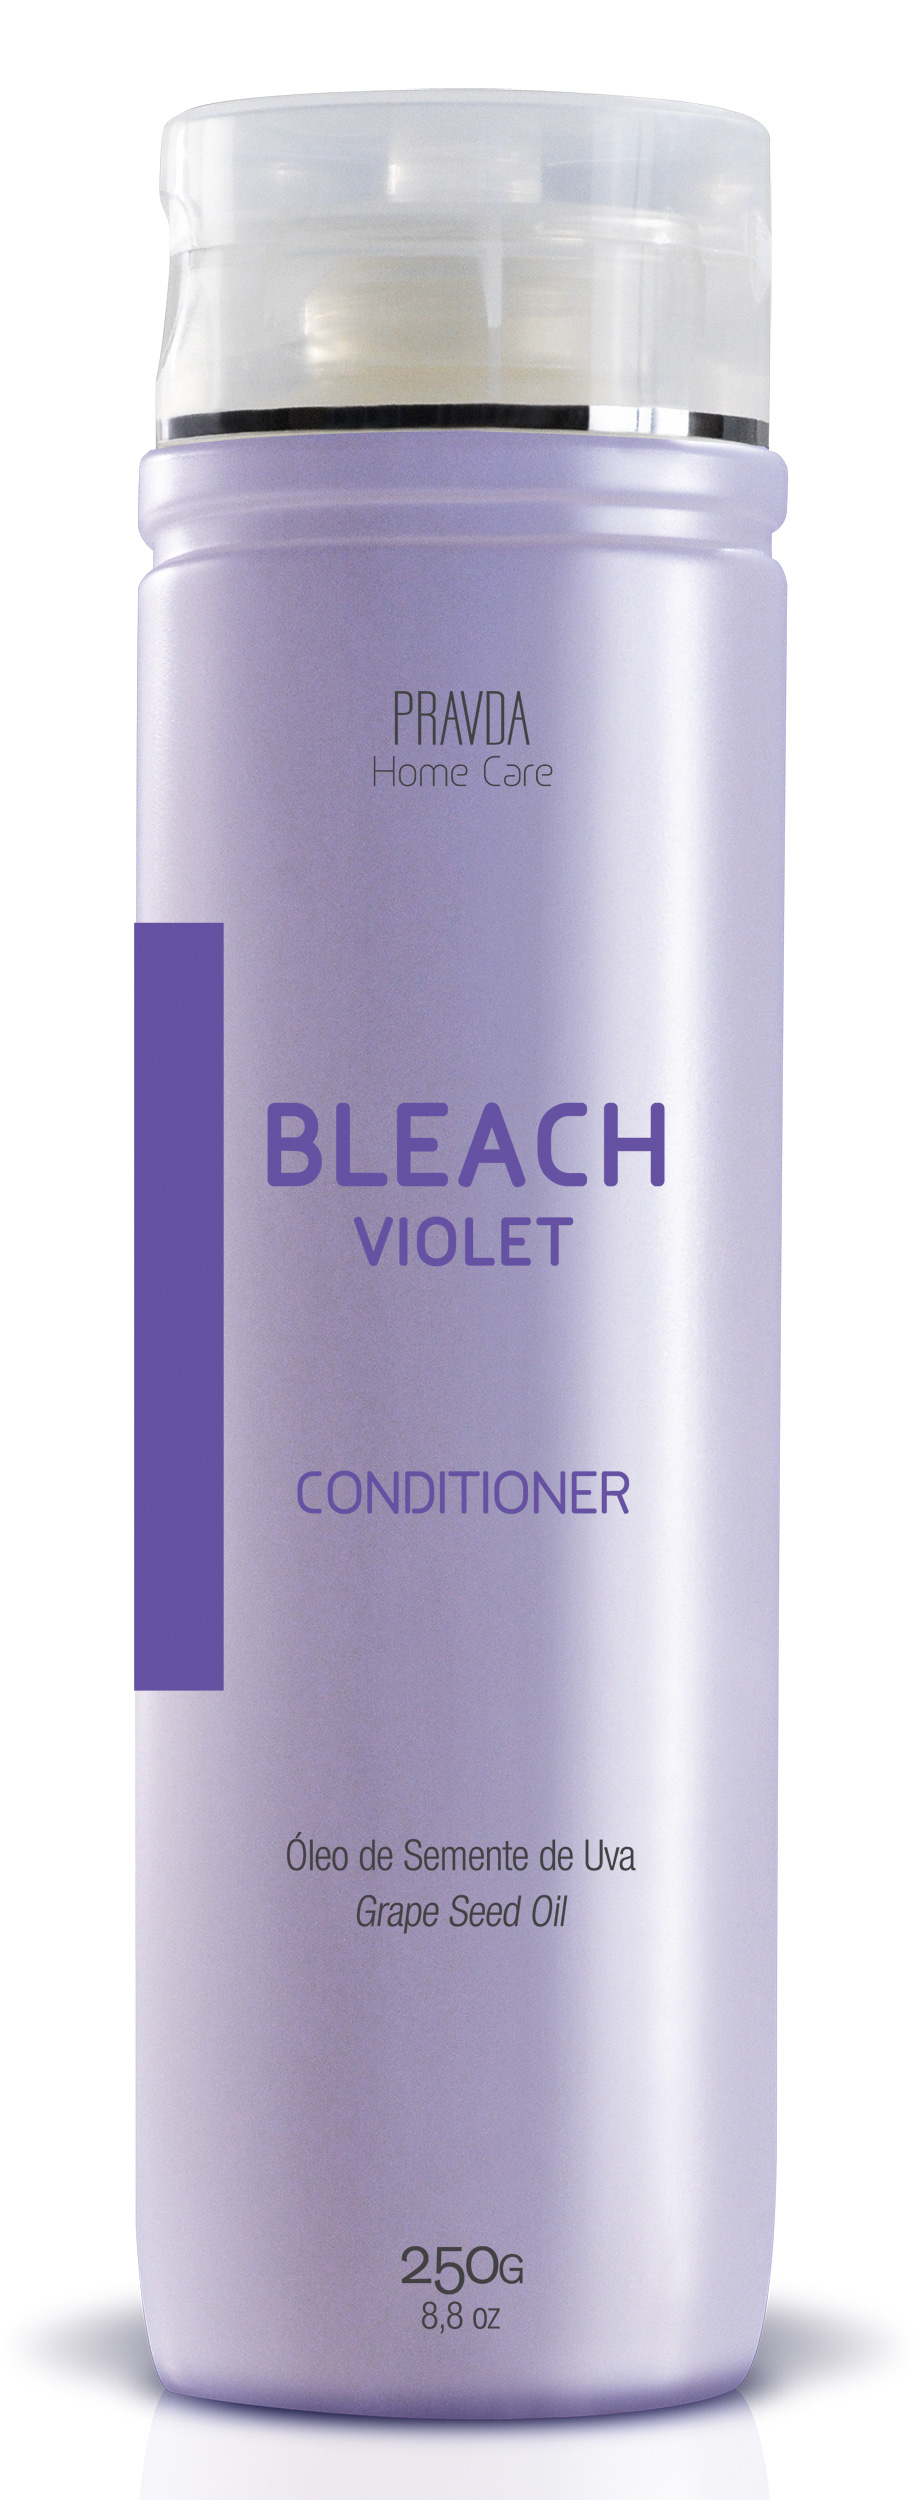 Bleach Violet Condicionador Matizante 250g Pravda